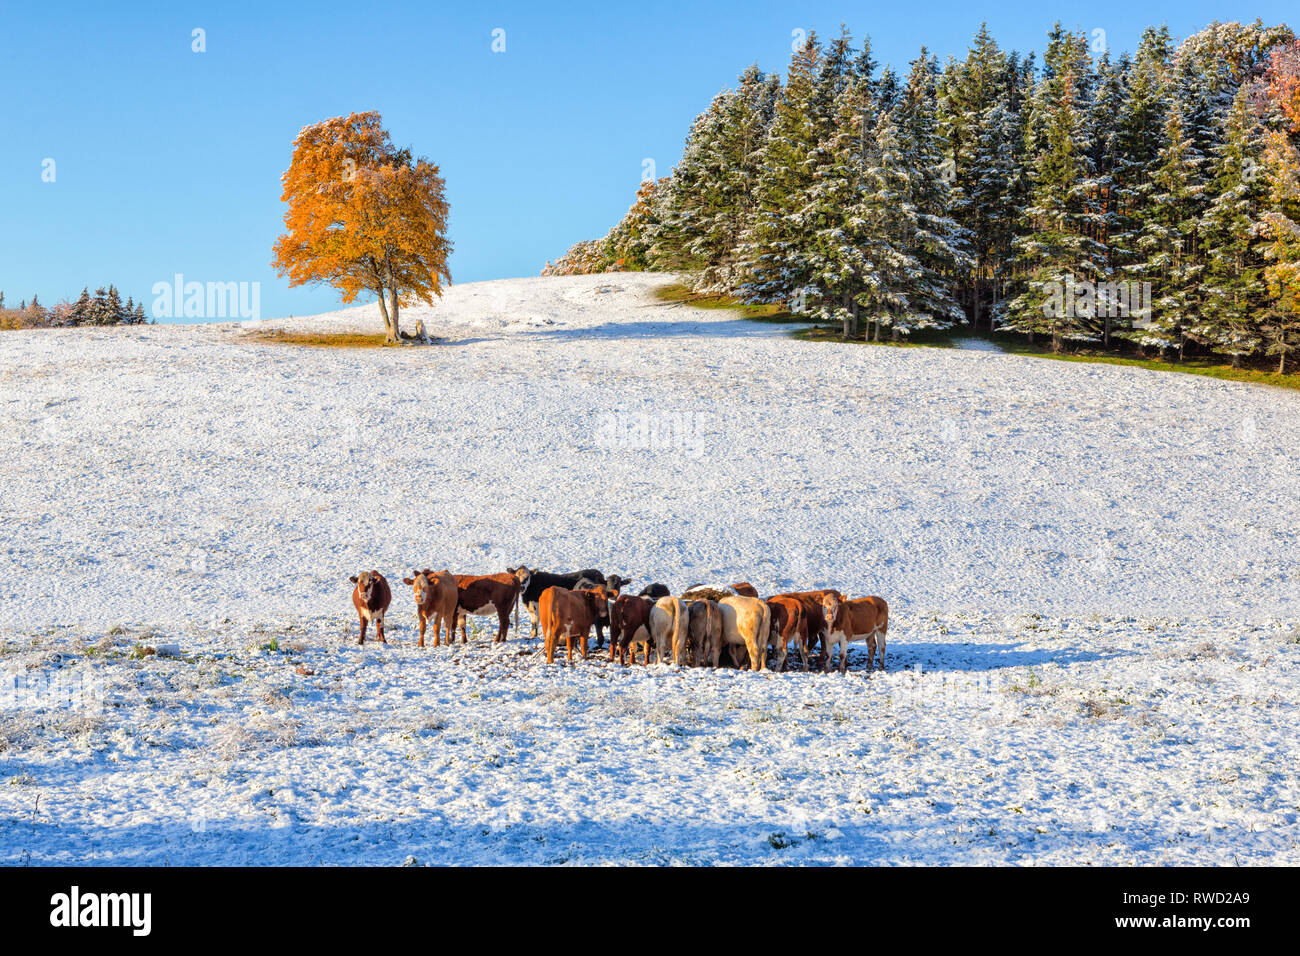 Lone Tree e bovini, coperta di neve la terra, St. Catherines, Prince Edward Island, Canada Foto Stock